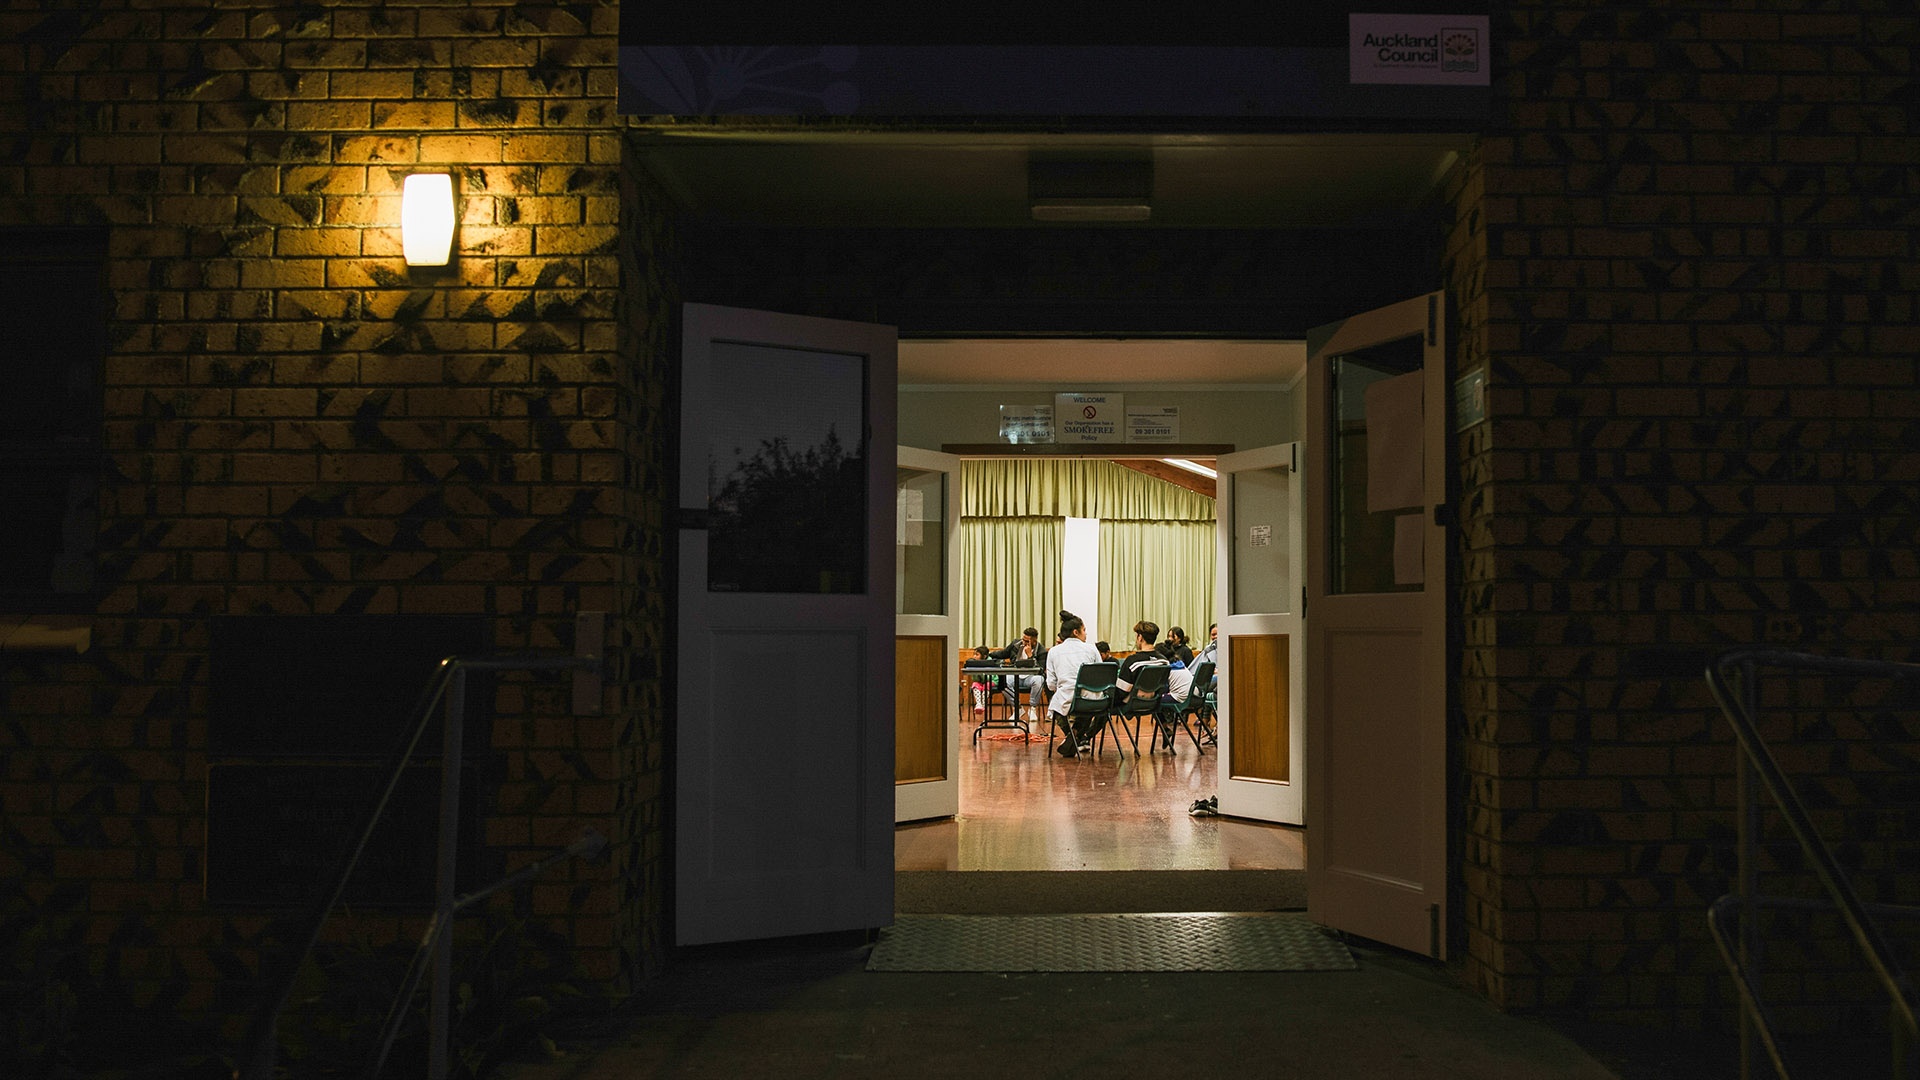 Einblick in eine bei Nacht beleuchtete Wohnung während einer Ridvan-Feier in Manurewa in Neuseeland